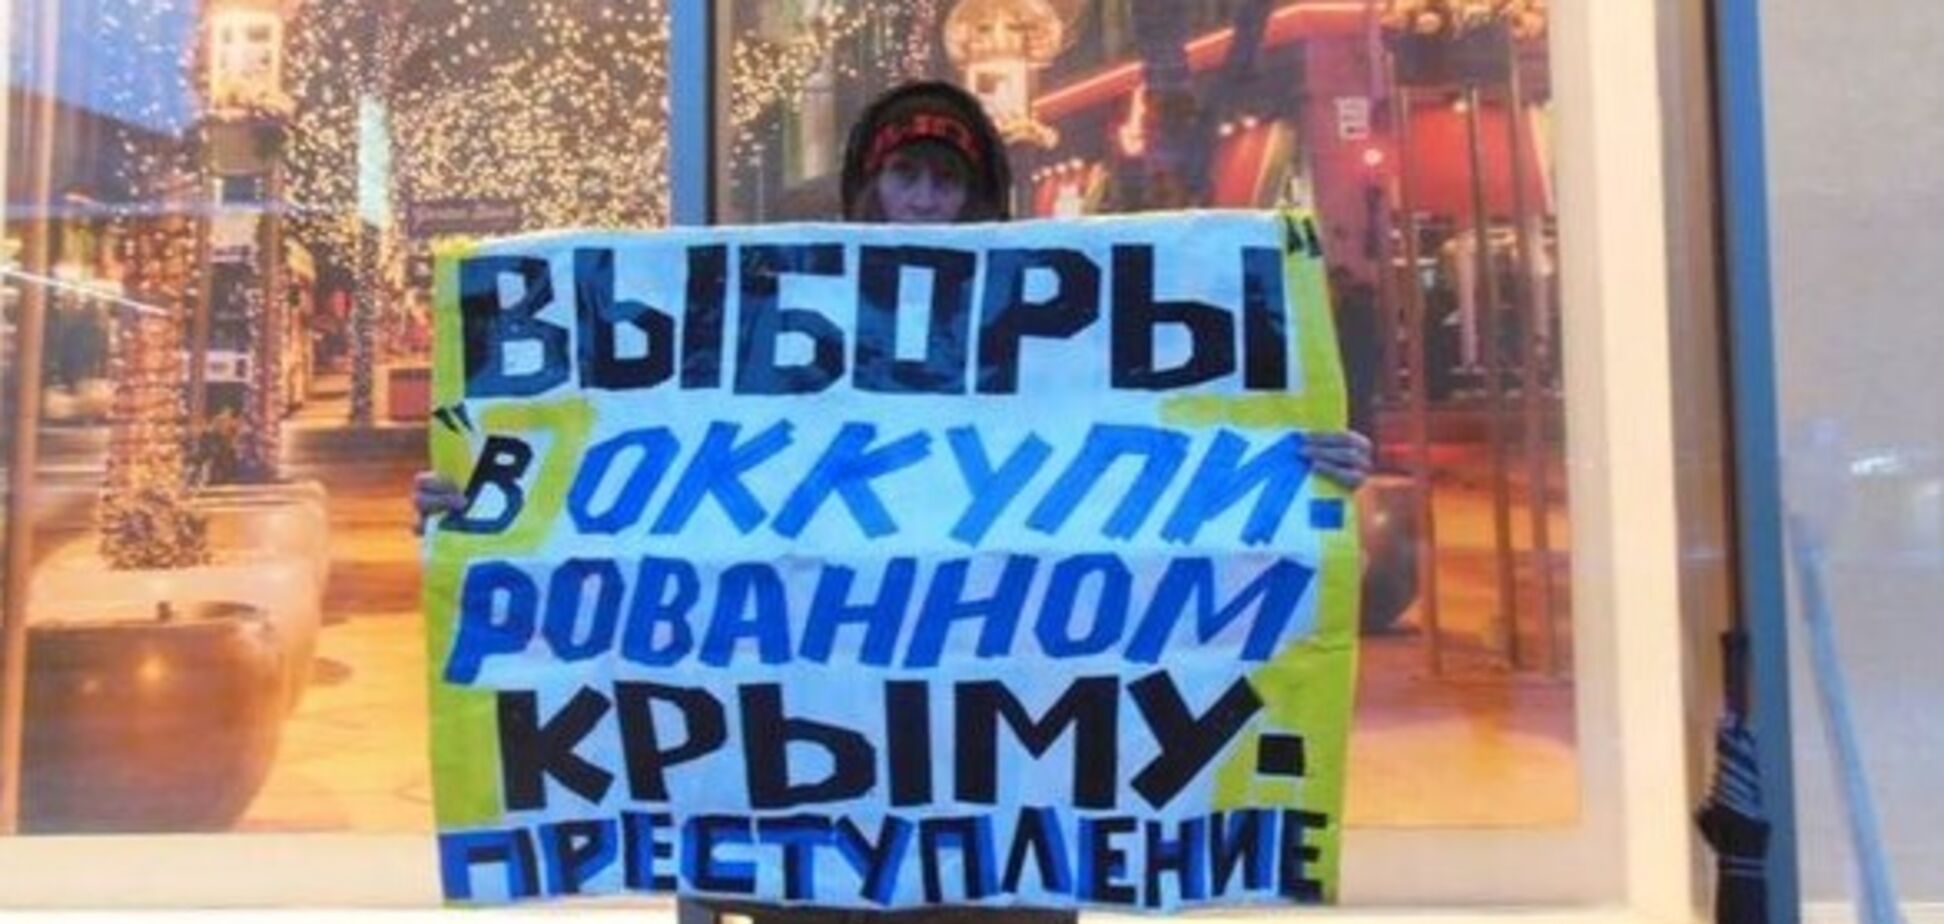 Мнение крымчан никто учитывать не будет